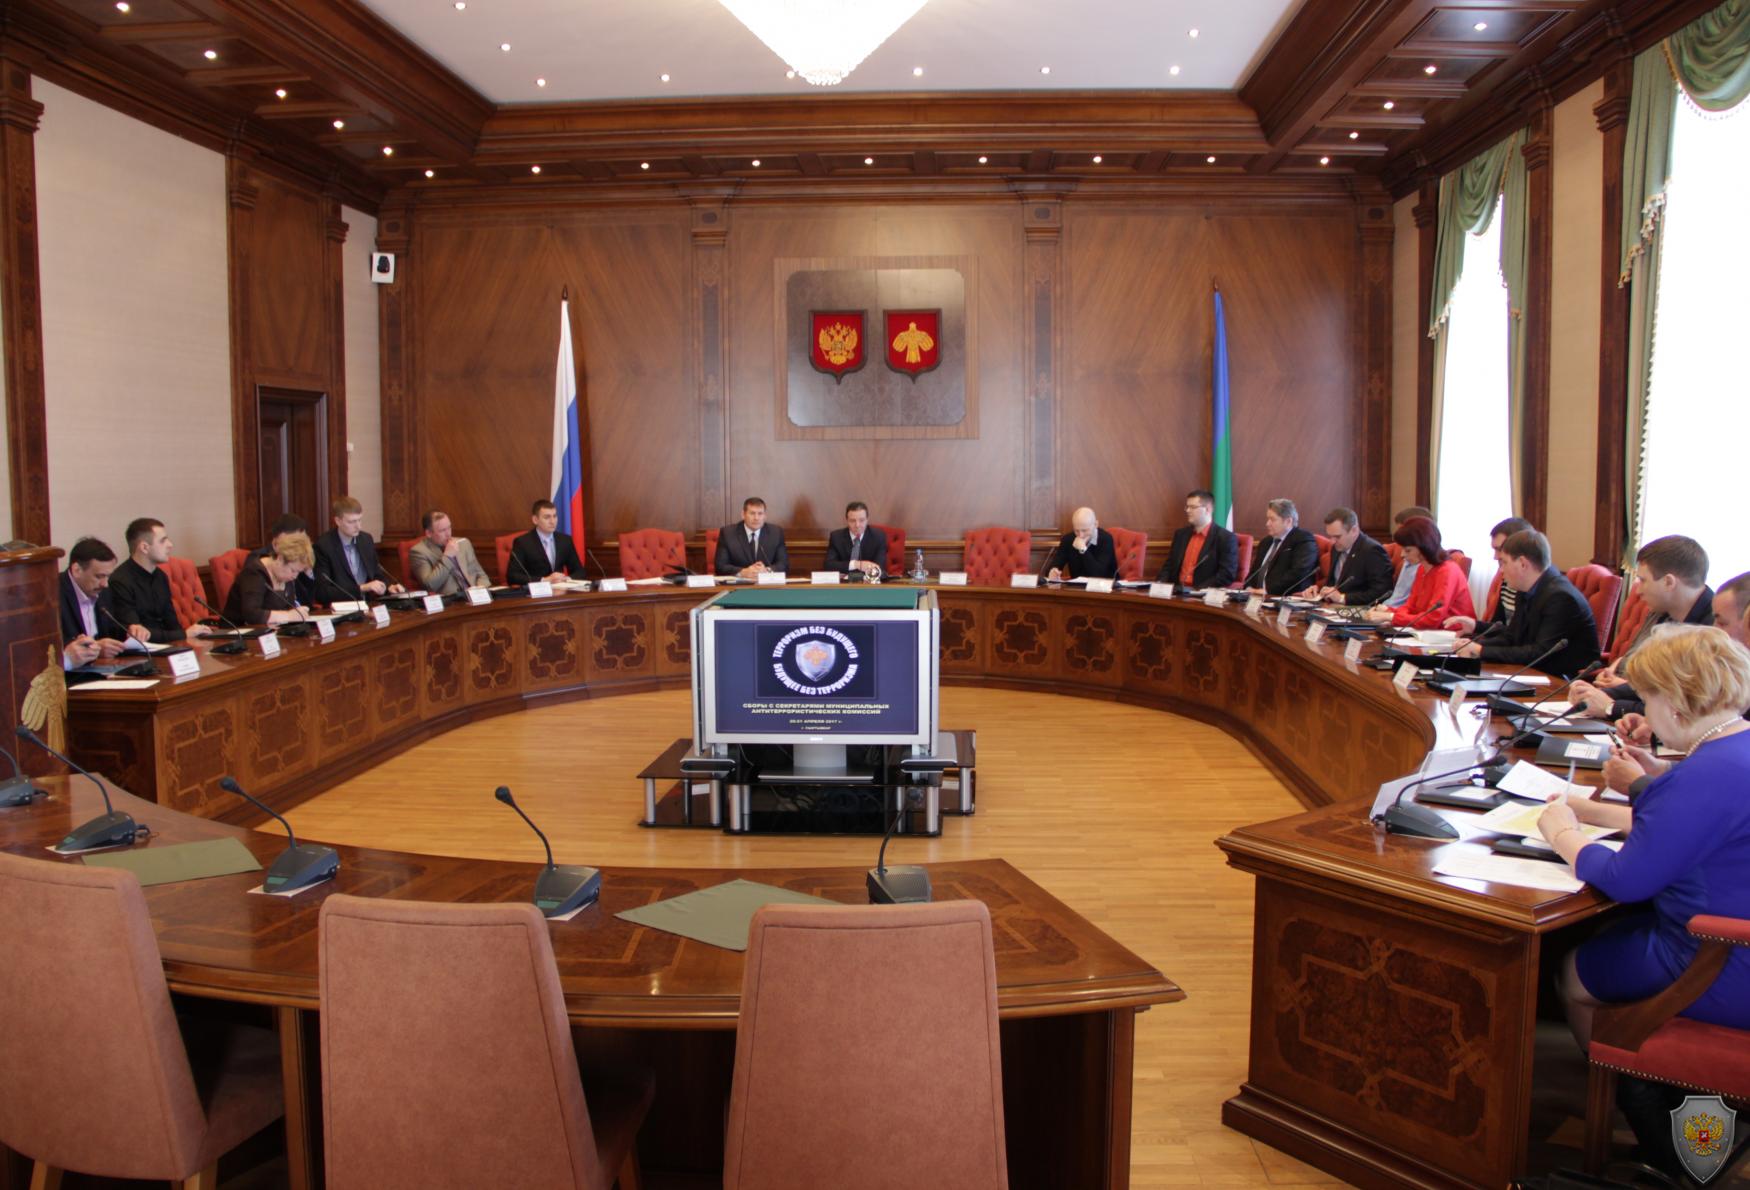 В столице Коми прошли плановые двухдневные сборы секретарей муниципальных антитеррористических комиссий